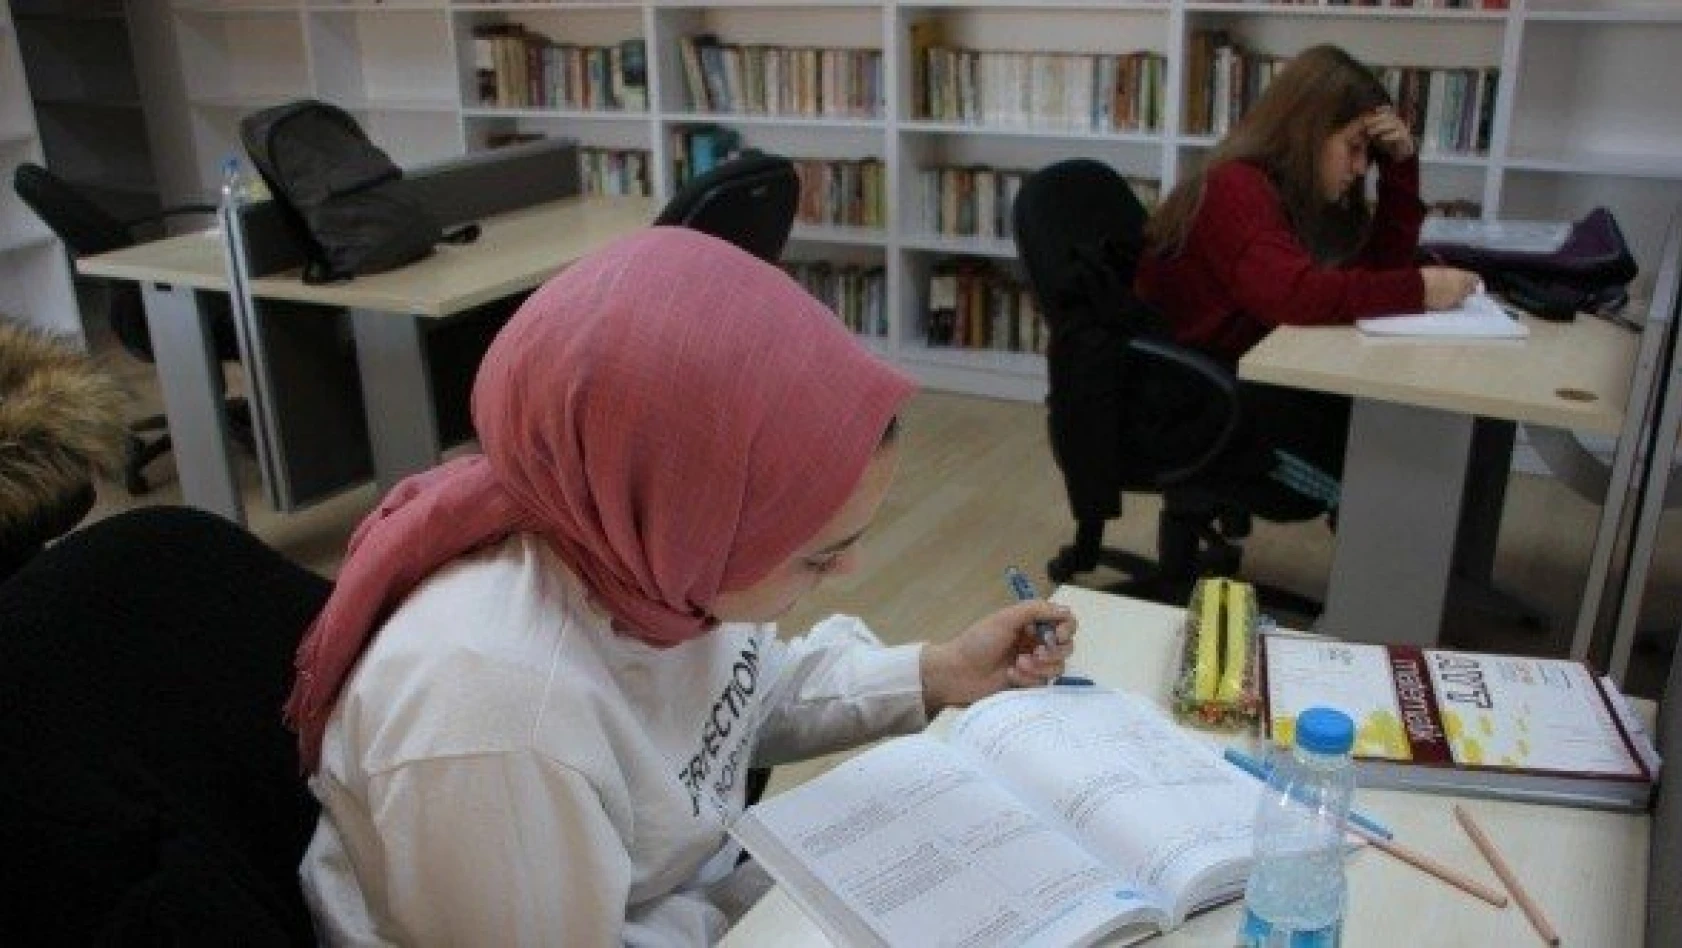 Cide Halk Kütüphanesine 4 bin kitap bağışlandı